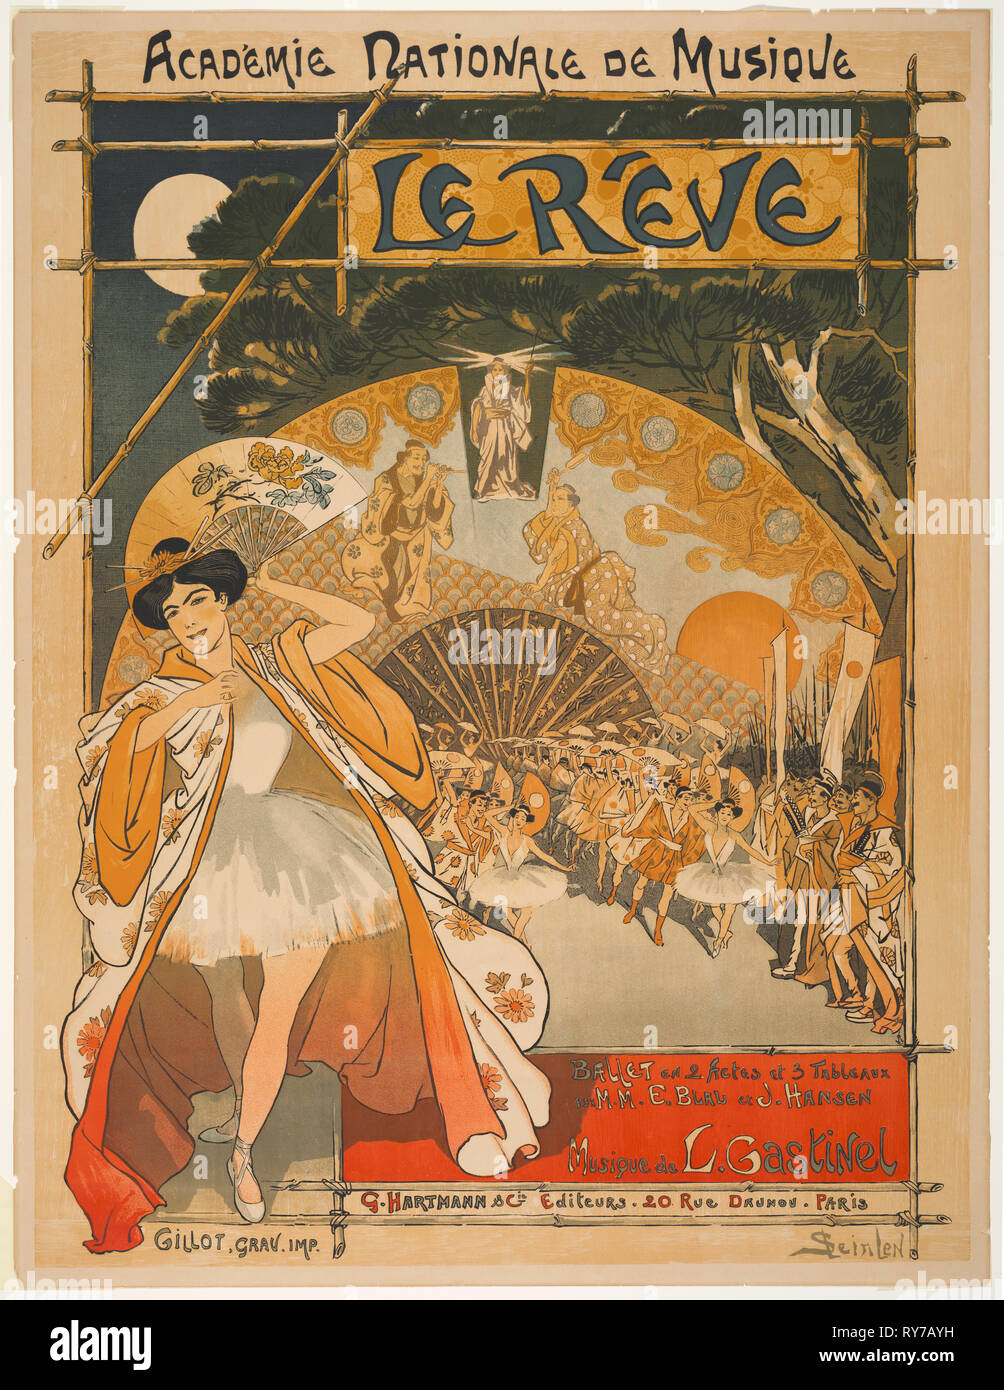 Academie Nationale de Musique: The Dream, 1891. Théophile Alexandre Steinlen (Swiss, 1859-1923), G. Hartmann & Cie Editeurs, 20 rue Daunou, Paris. Color lithograph; sheet: 81.2 x 62.2 cm (31 15/16 x 24 1/2 in.); image: 76.8 x 59.7 cm (30 1/4 x 23 1/2 in Stock Photo